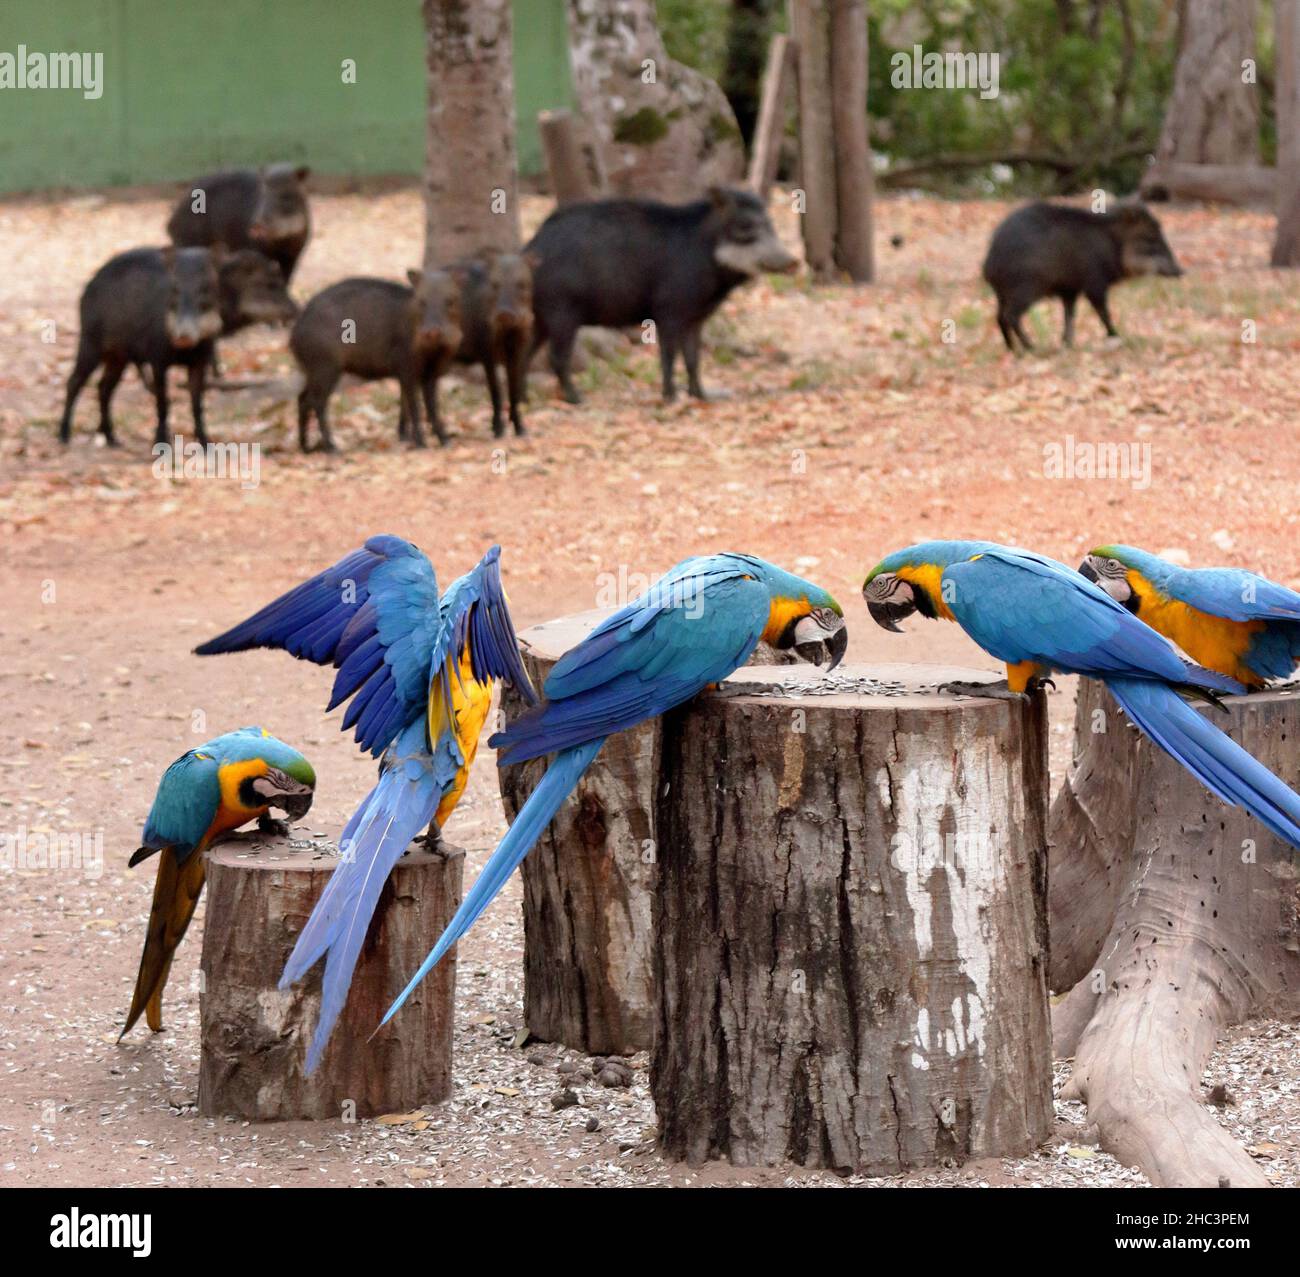 Groupe de manger des aras bleus et jaunes, Ara ararauna. En arrière-plan plusieurs peccary à lèvres blanches, Tayassu pecari Banque D'Images